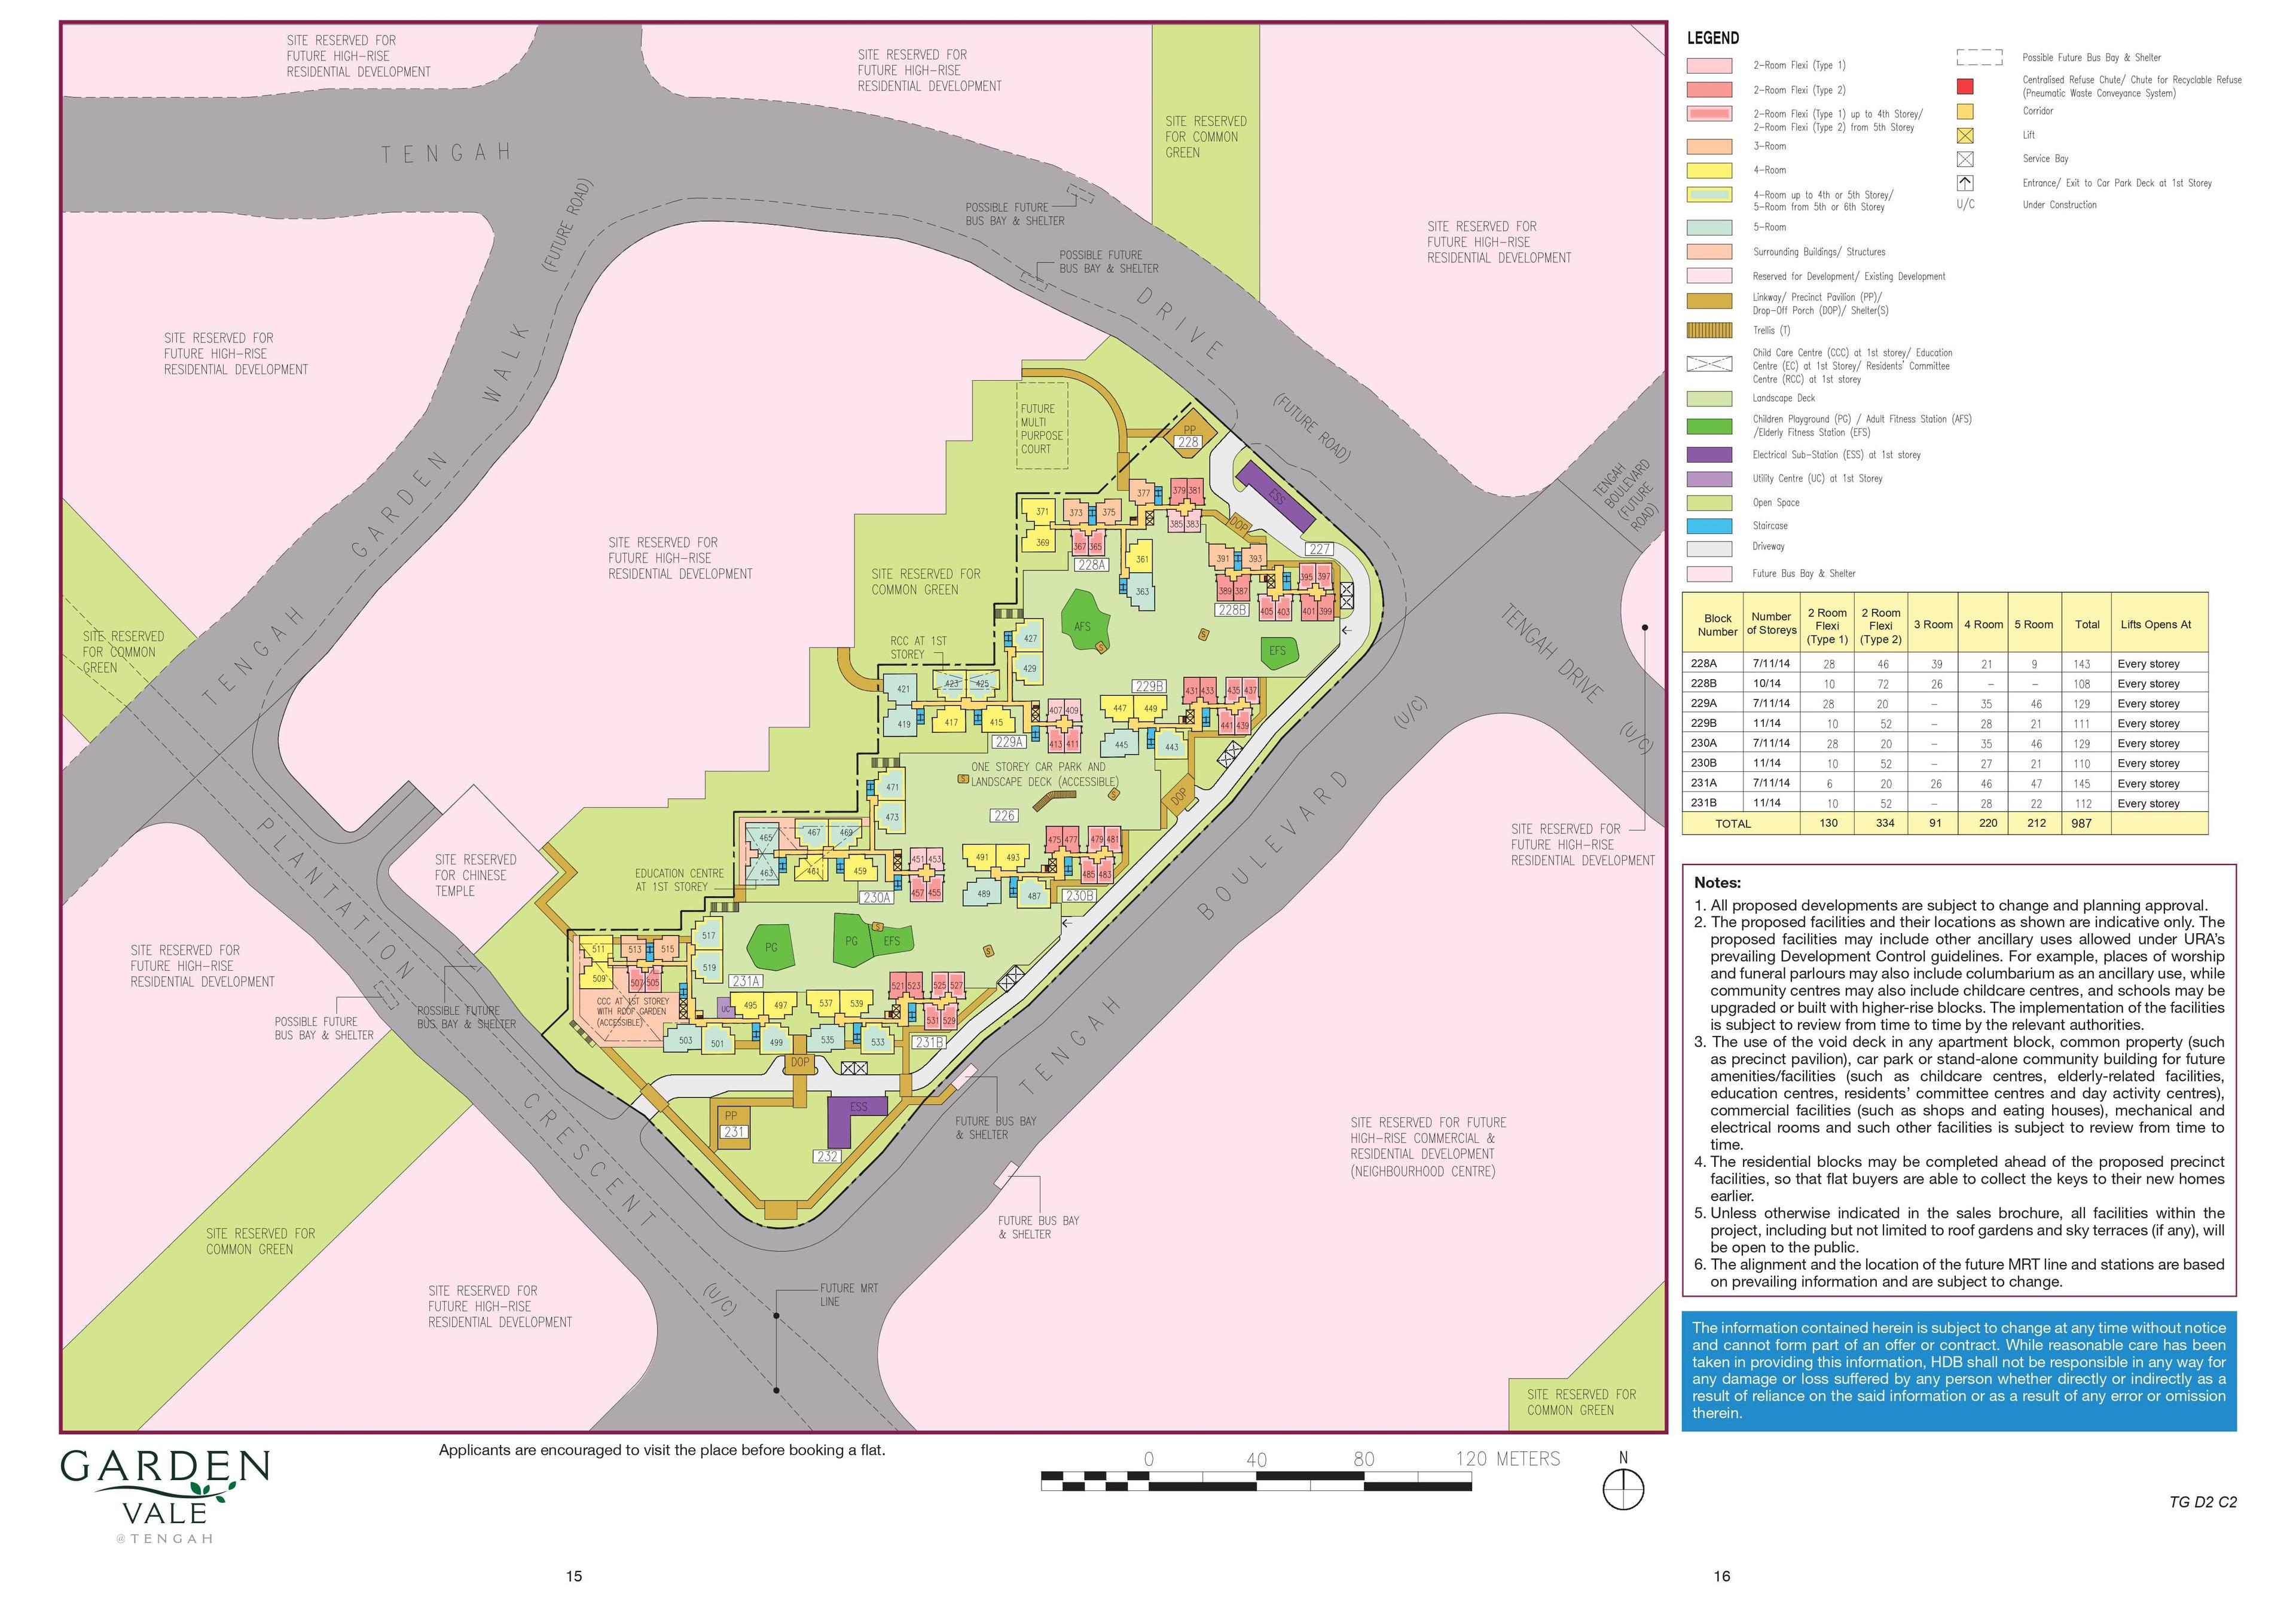 Garden Vale @ Tengah Site Plan